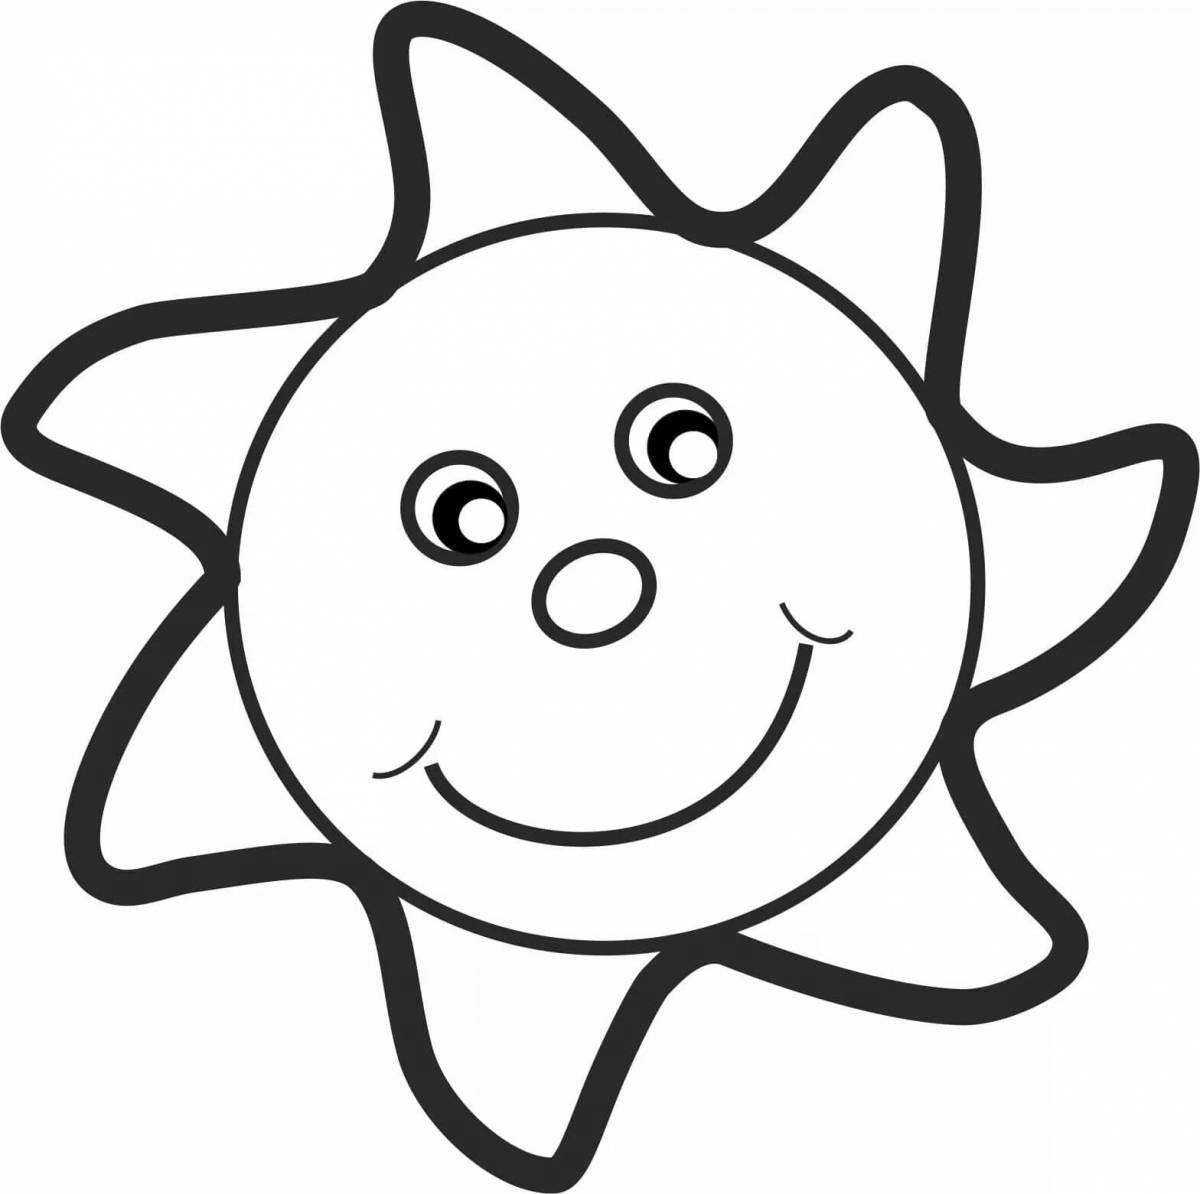 Увлекательная раскраска солнце для детей 3-4 лет